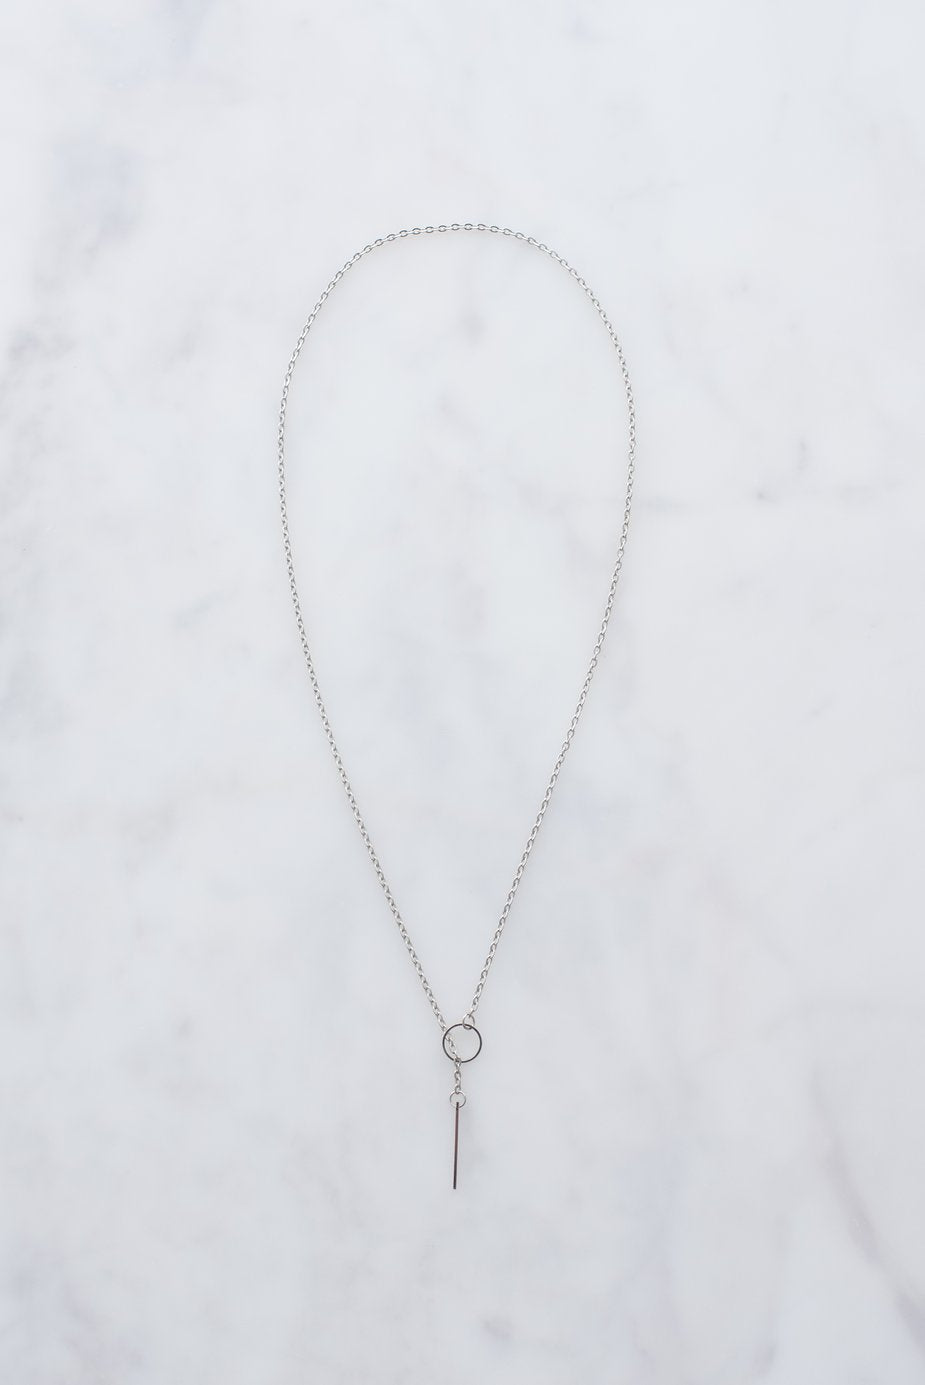 Silver Threader Necklace - wpdevshop